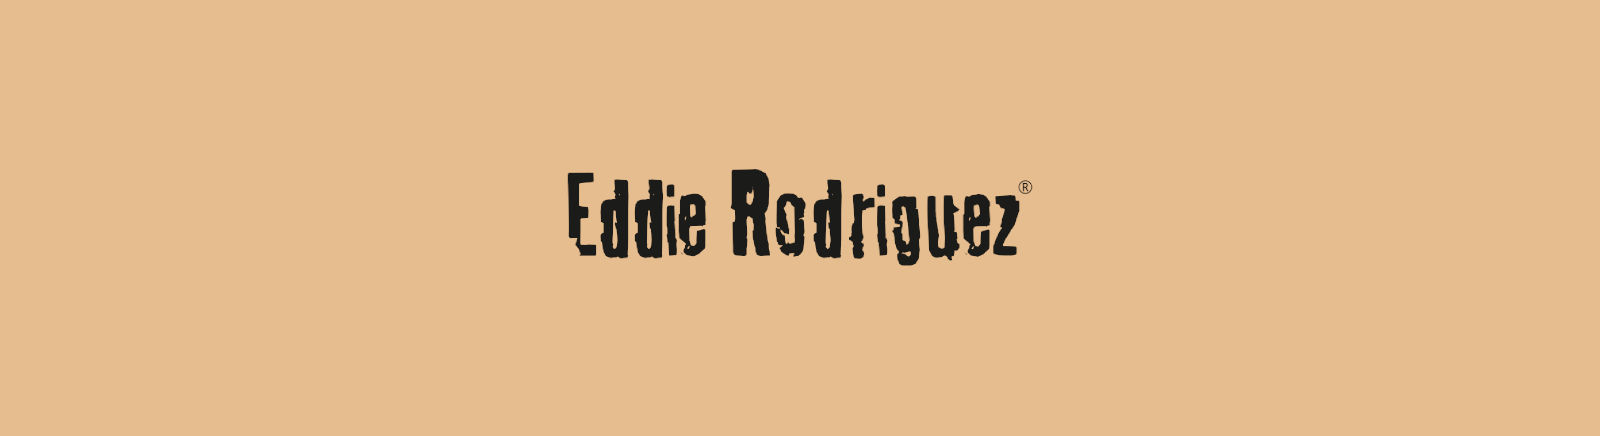 Prange: Eddie Rodriguez Pflegemittel & Zubehör online shoppen